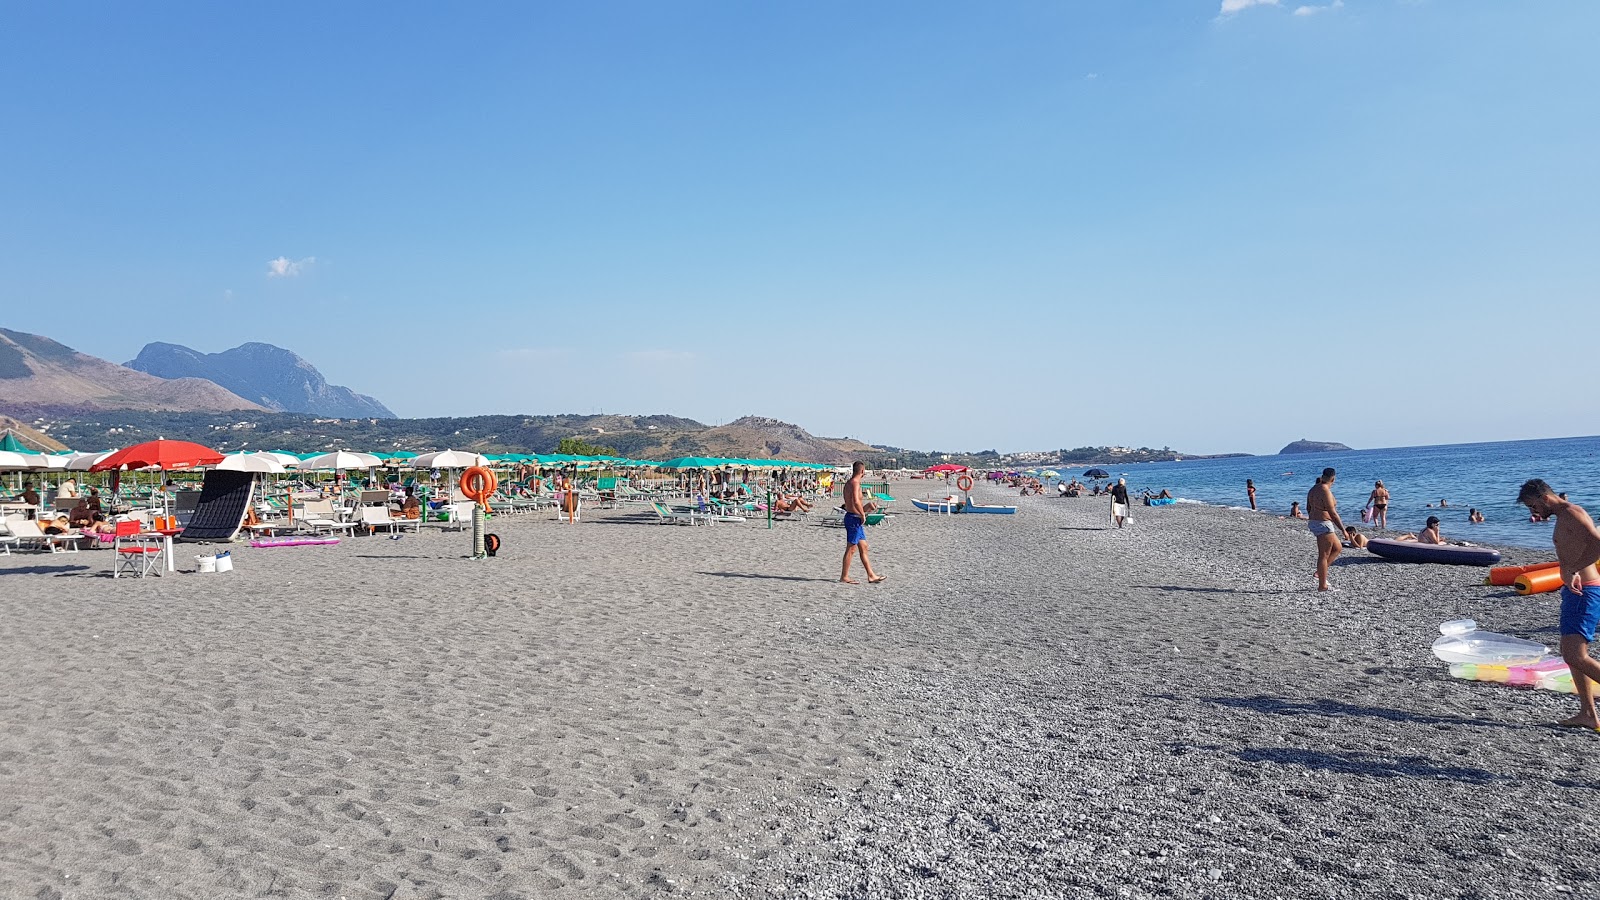 Foto de Acchio-Fiumicello beach com areia cinza superfície